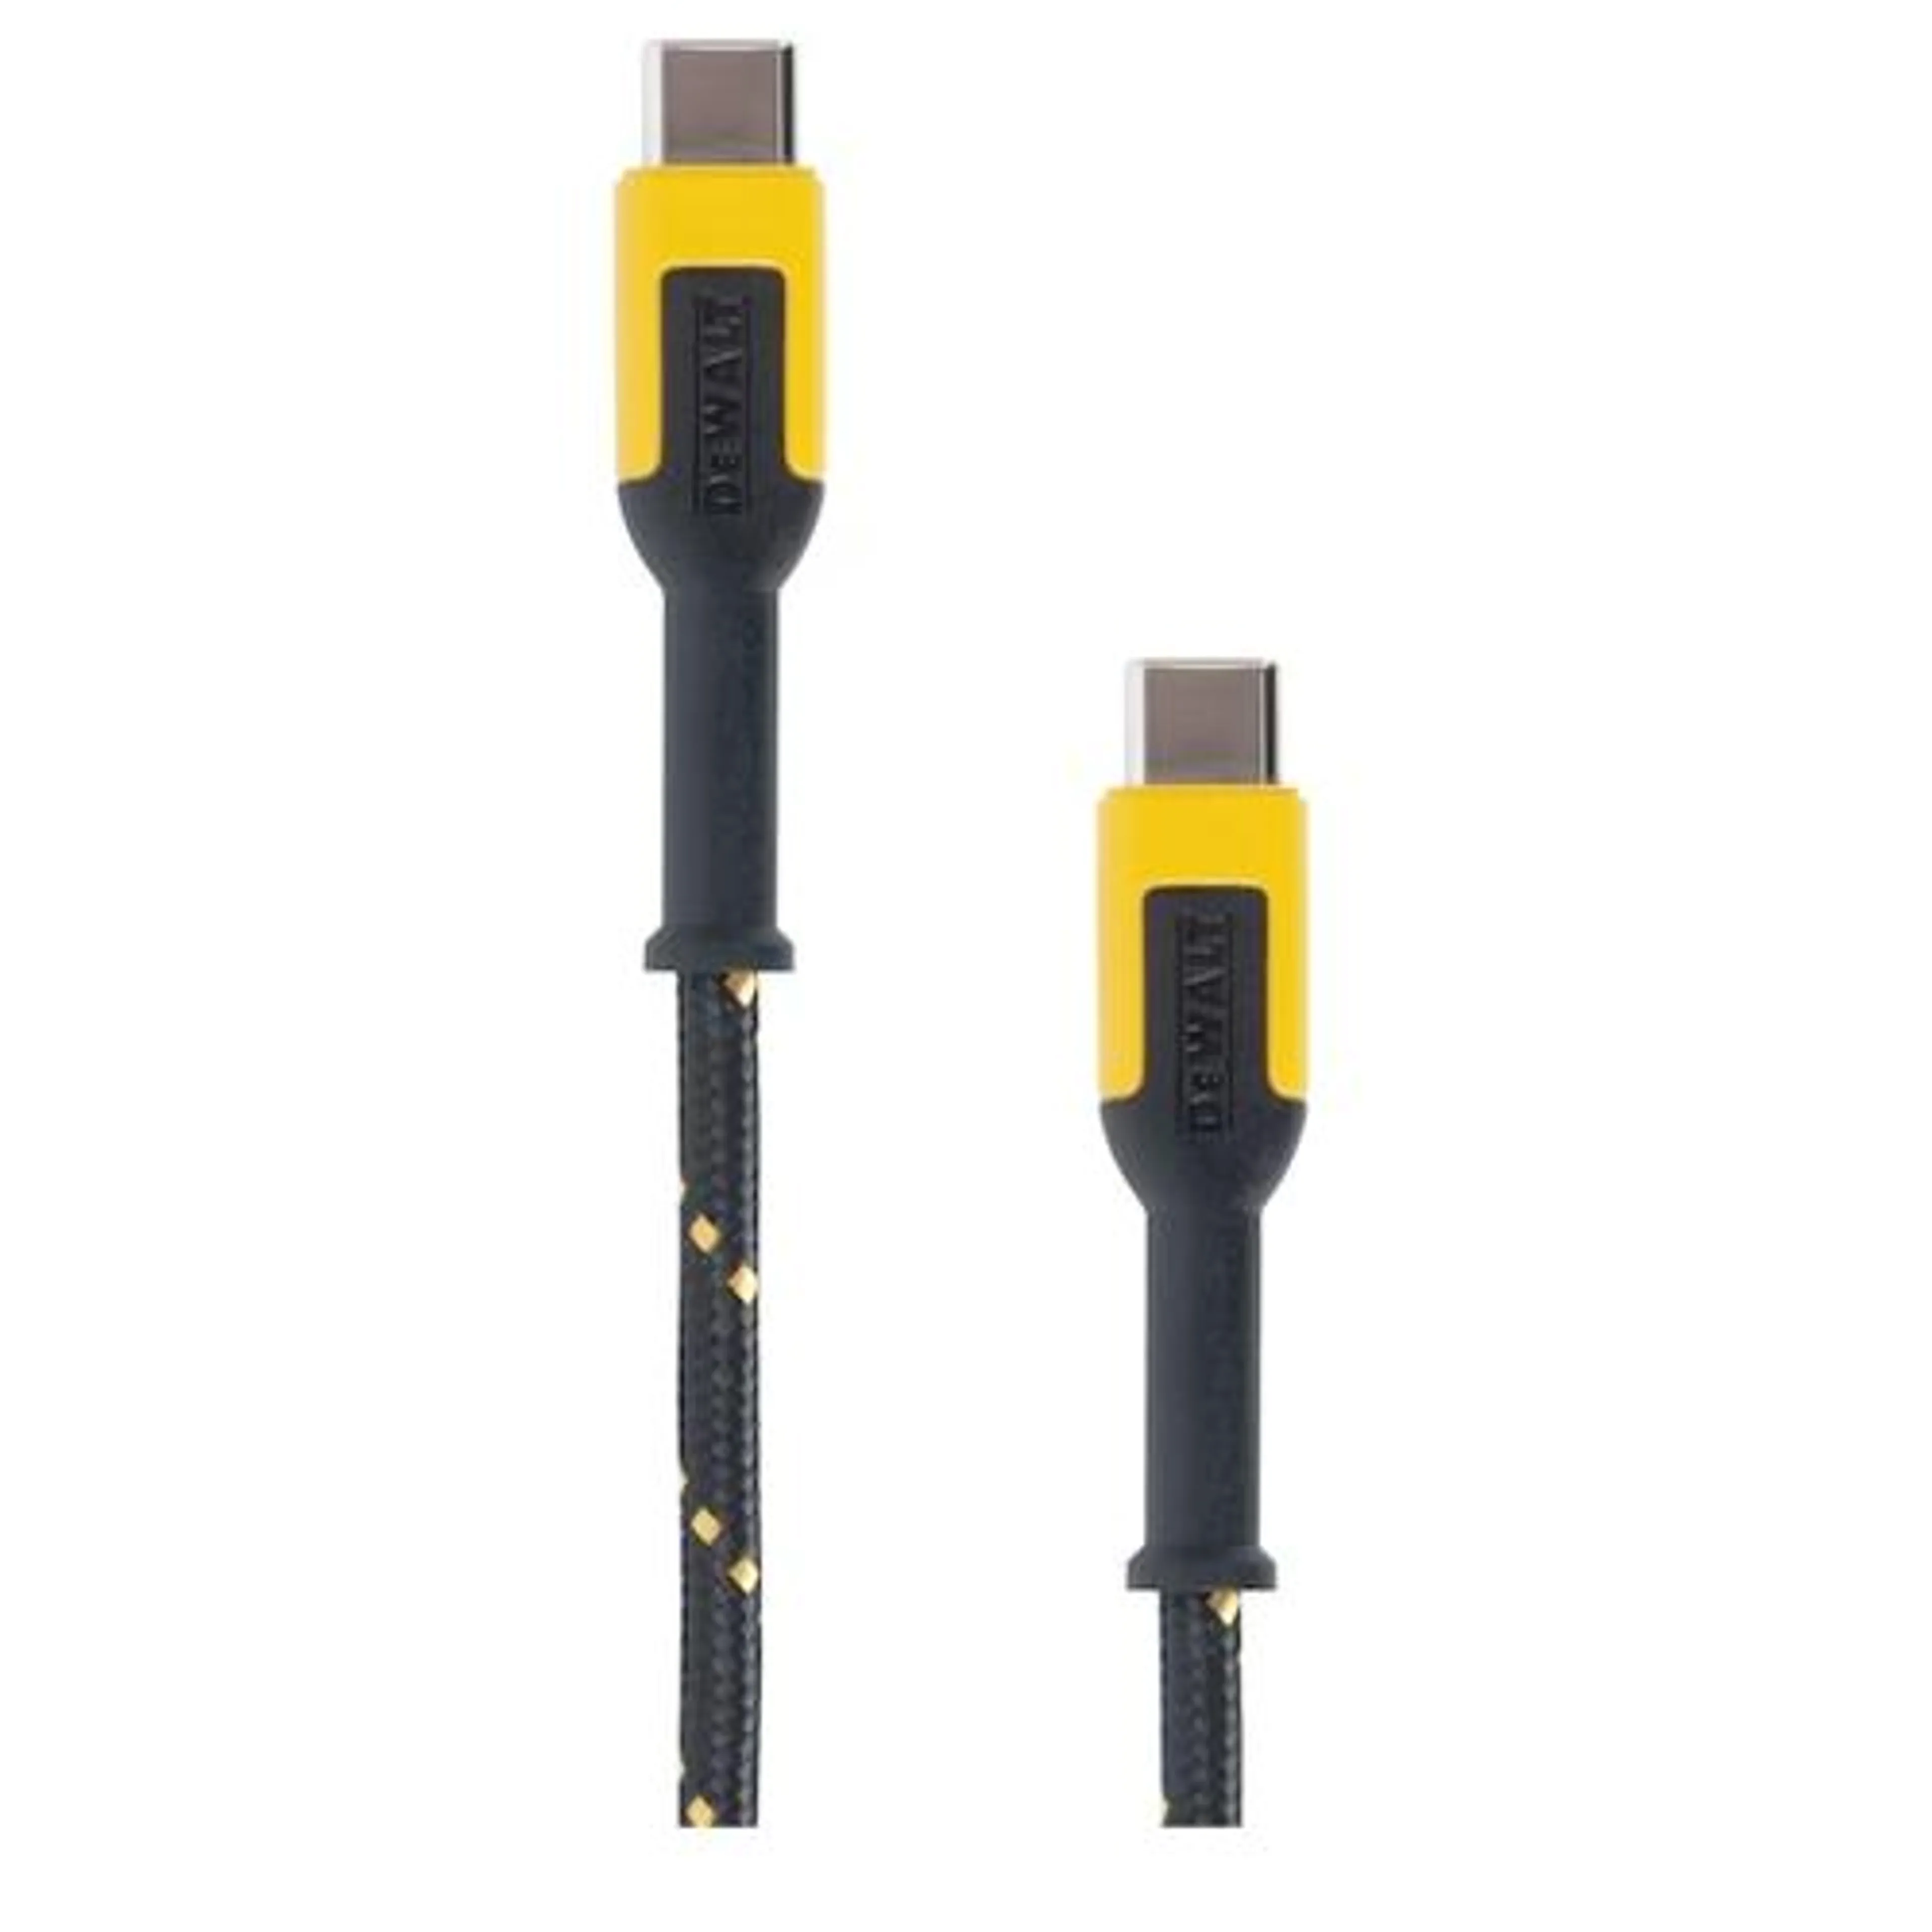 DeWalt Reinforced Charging Cable for USB-C 6 ft.